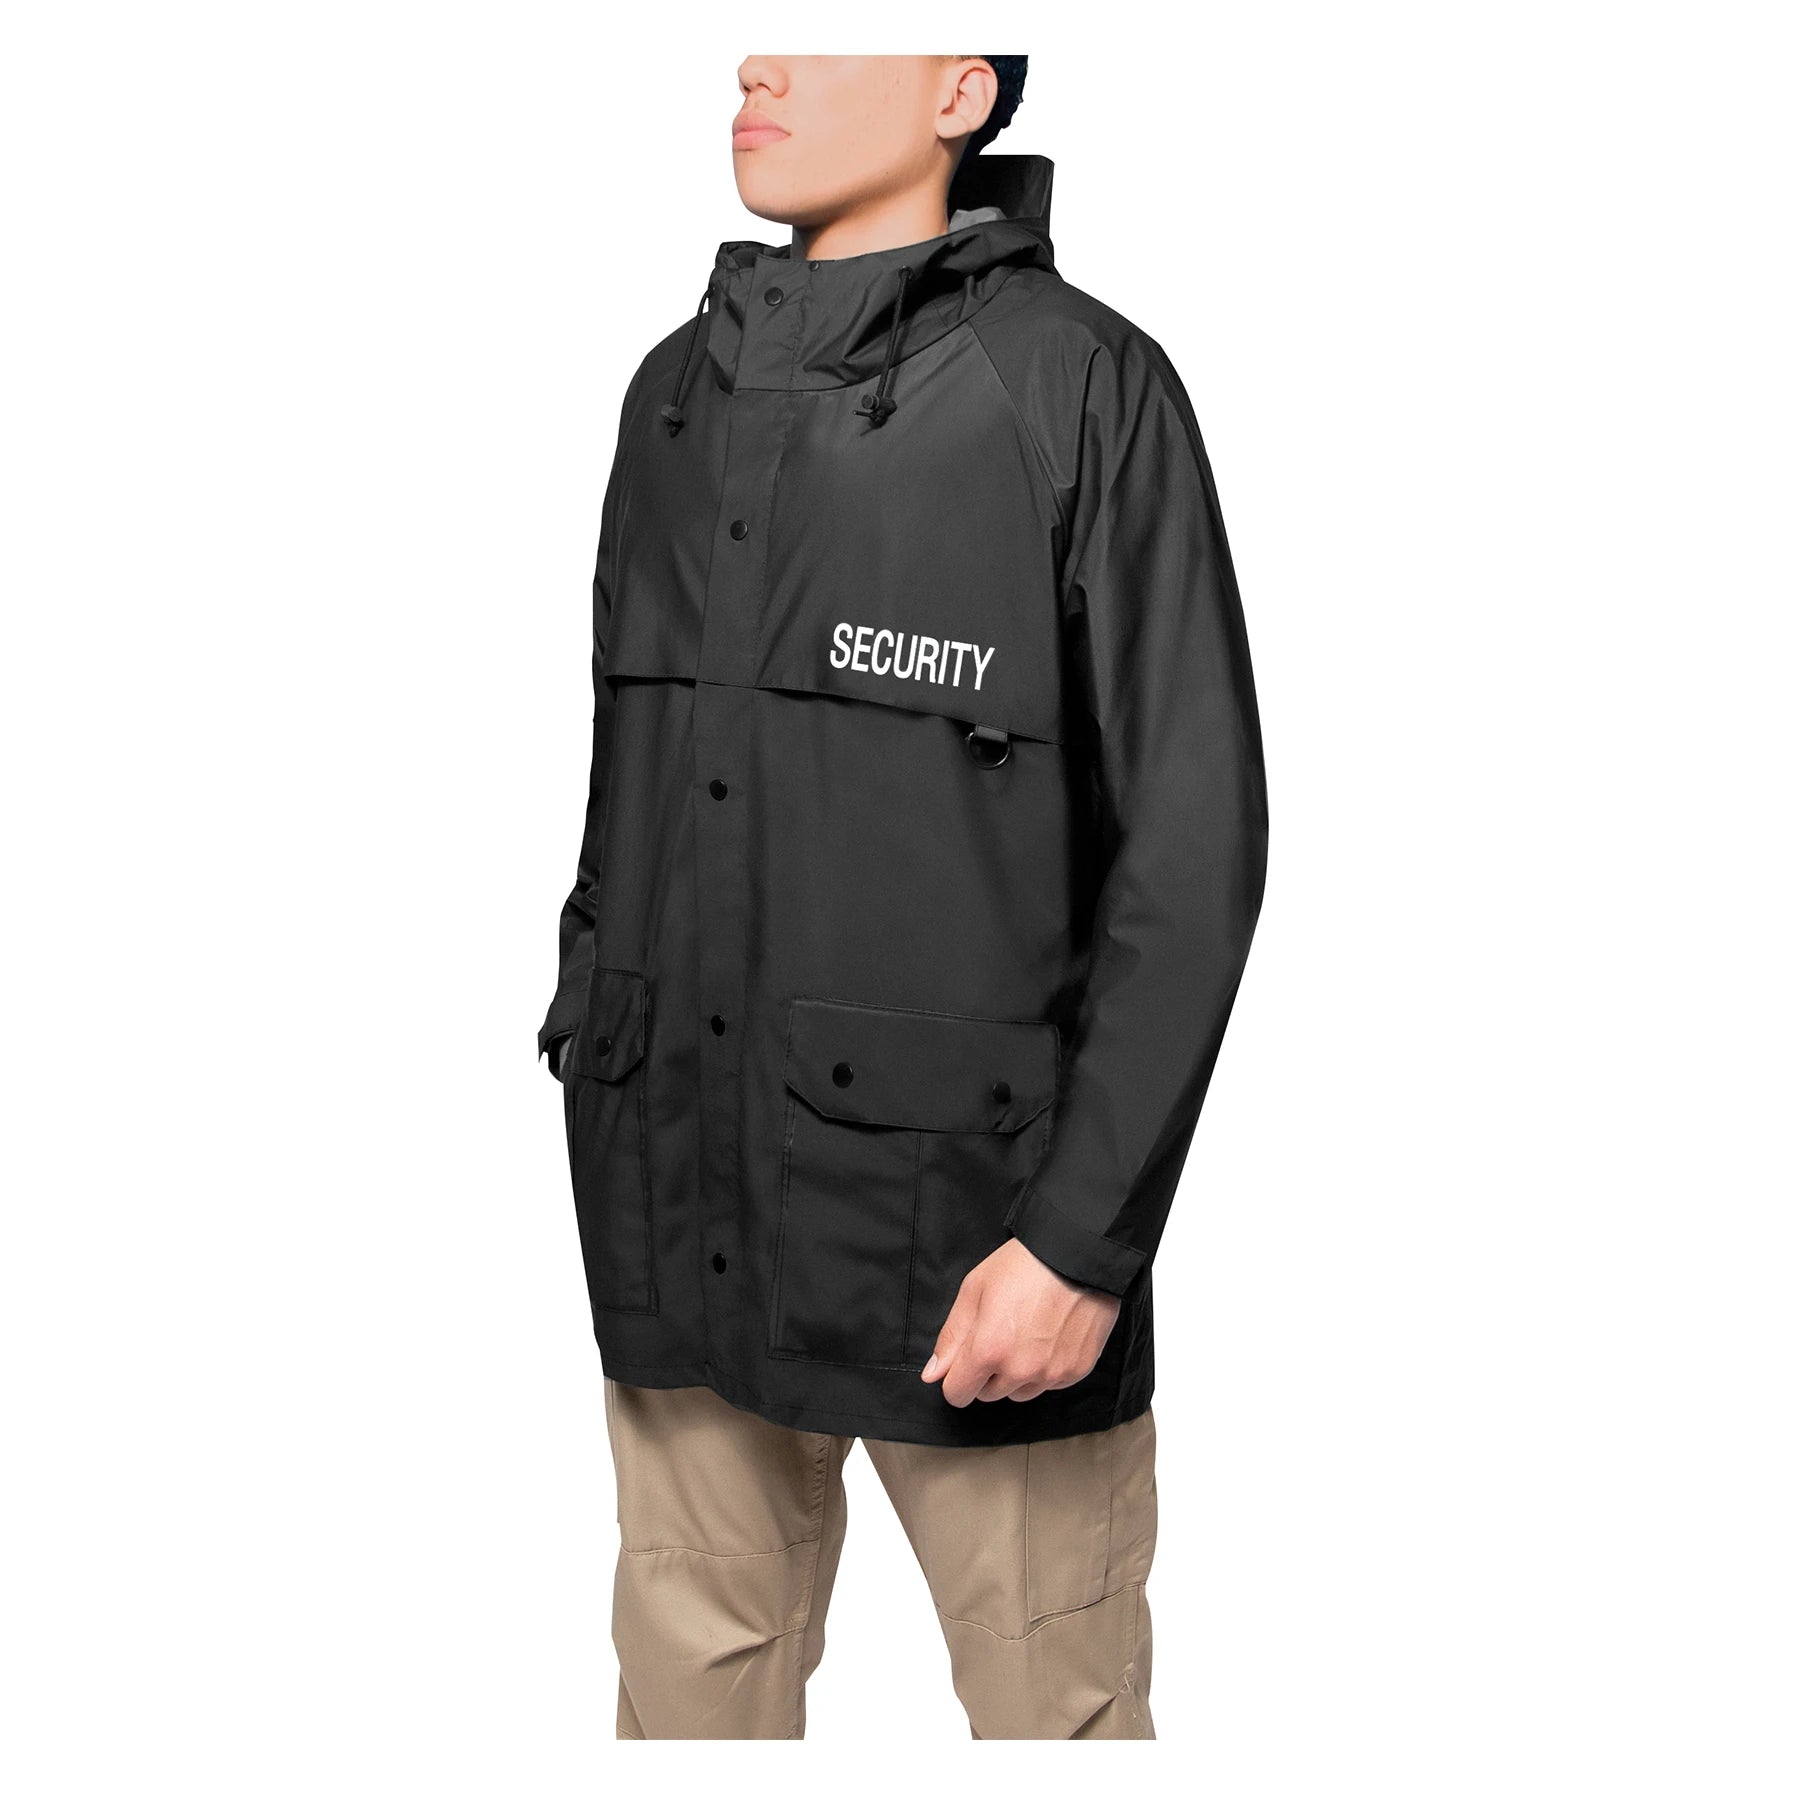 Rothco Security Nylon Rain Jacket - Black Medium 2560-M